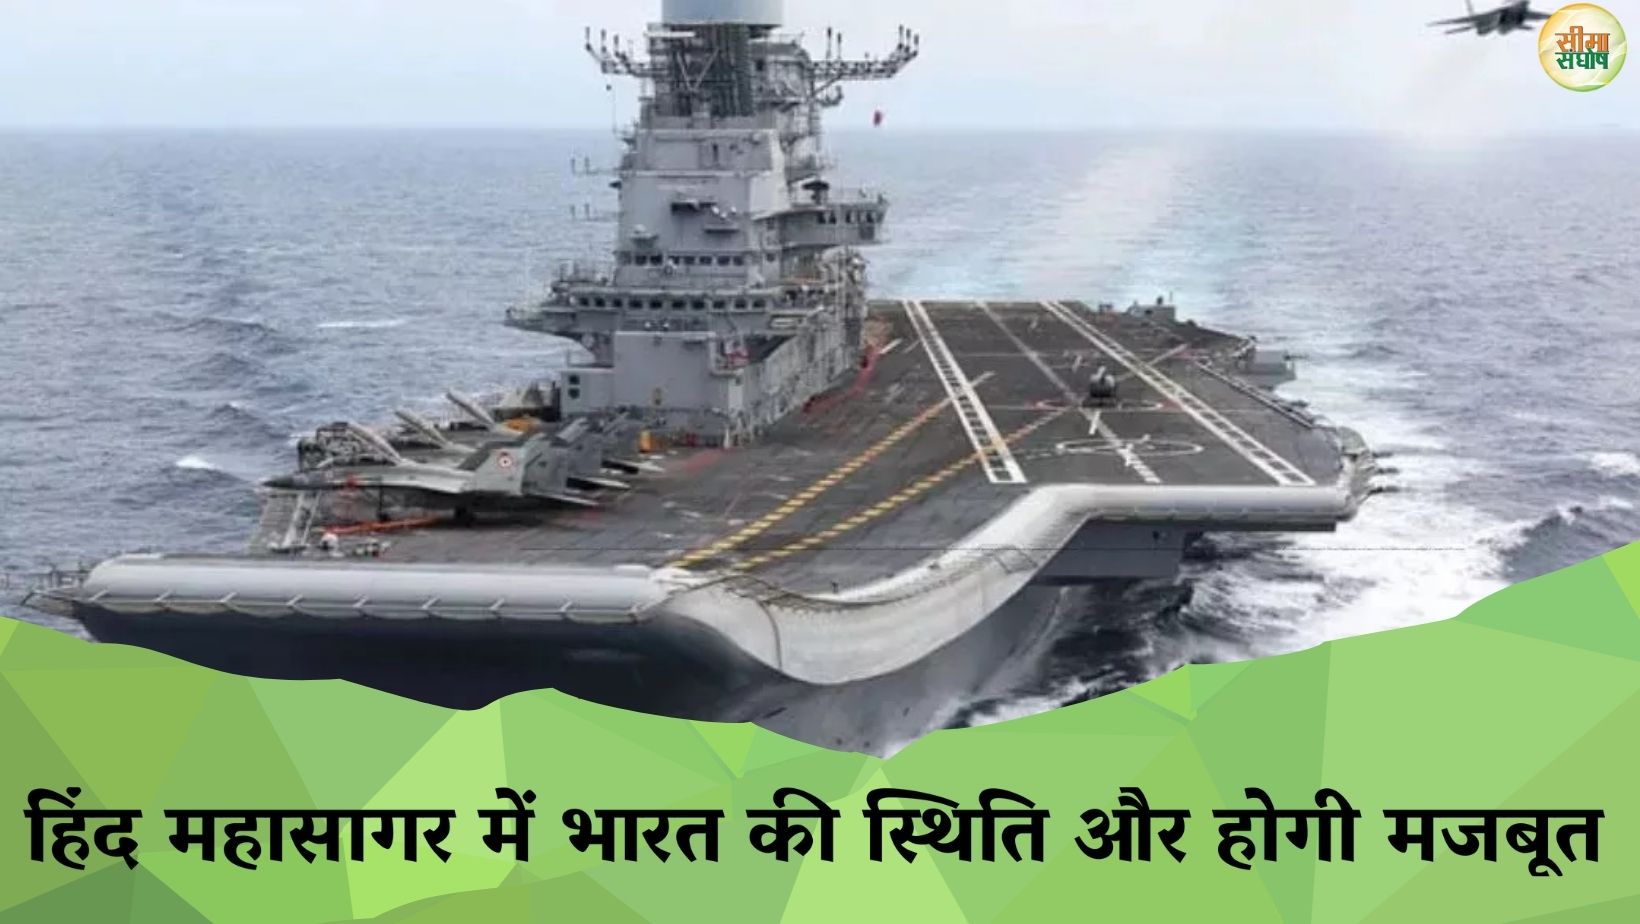 लक्षद्वीप में भारतीय नौसेना का जल्द होगा नया बेस, हिंद महासागर में भारत की स्थिति और होगी मजबूत